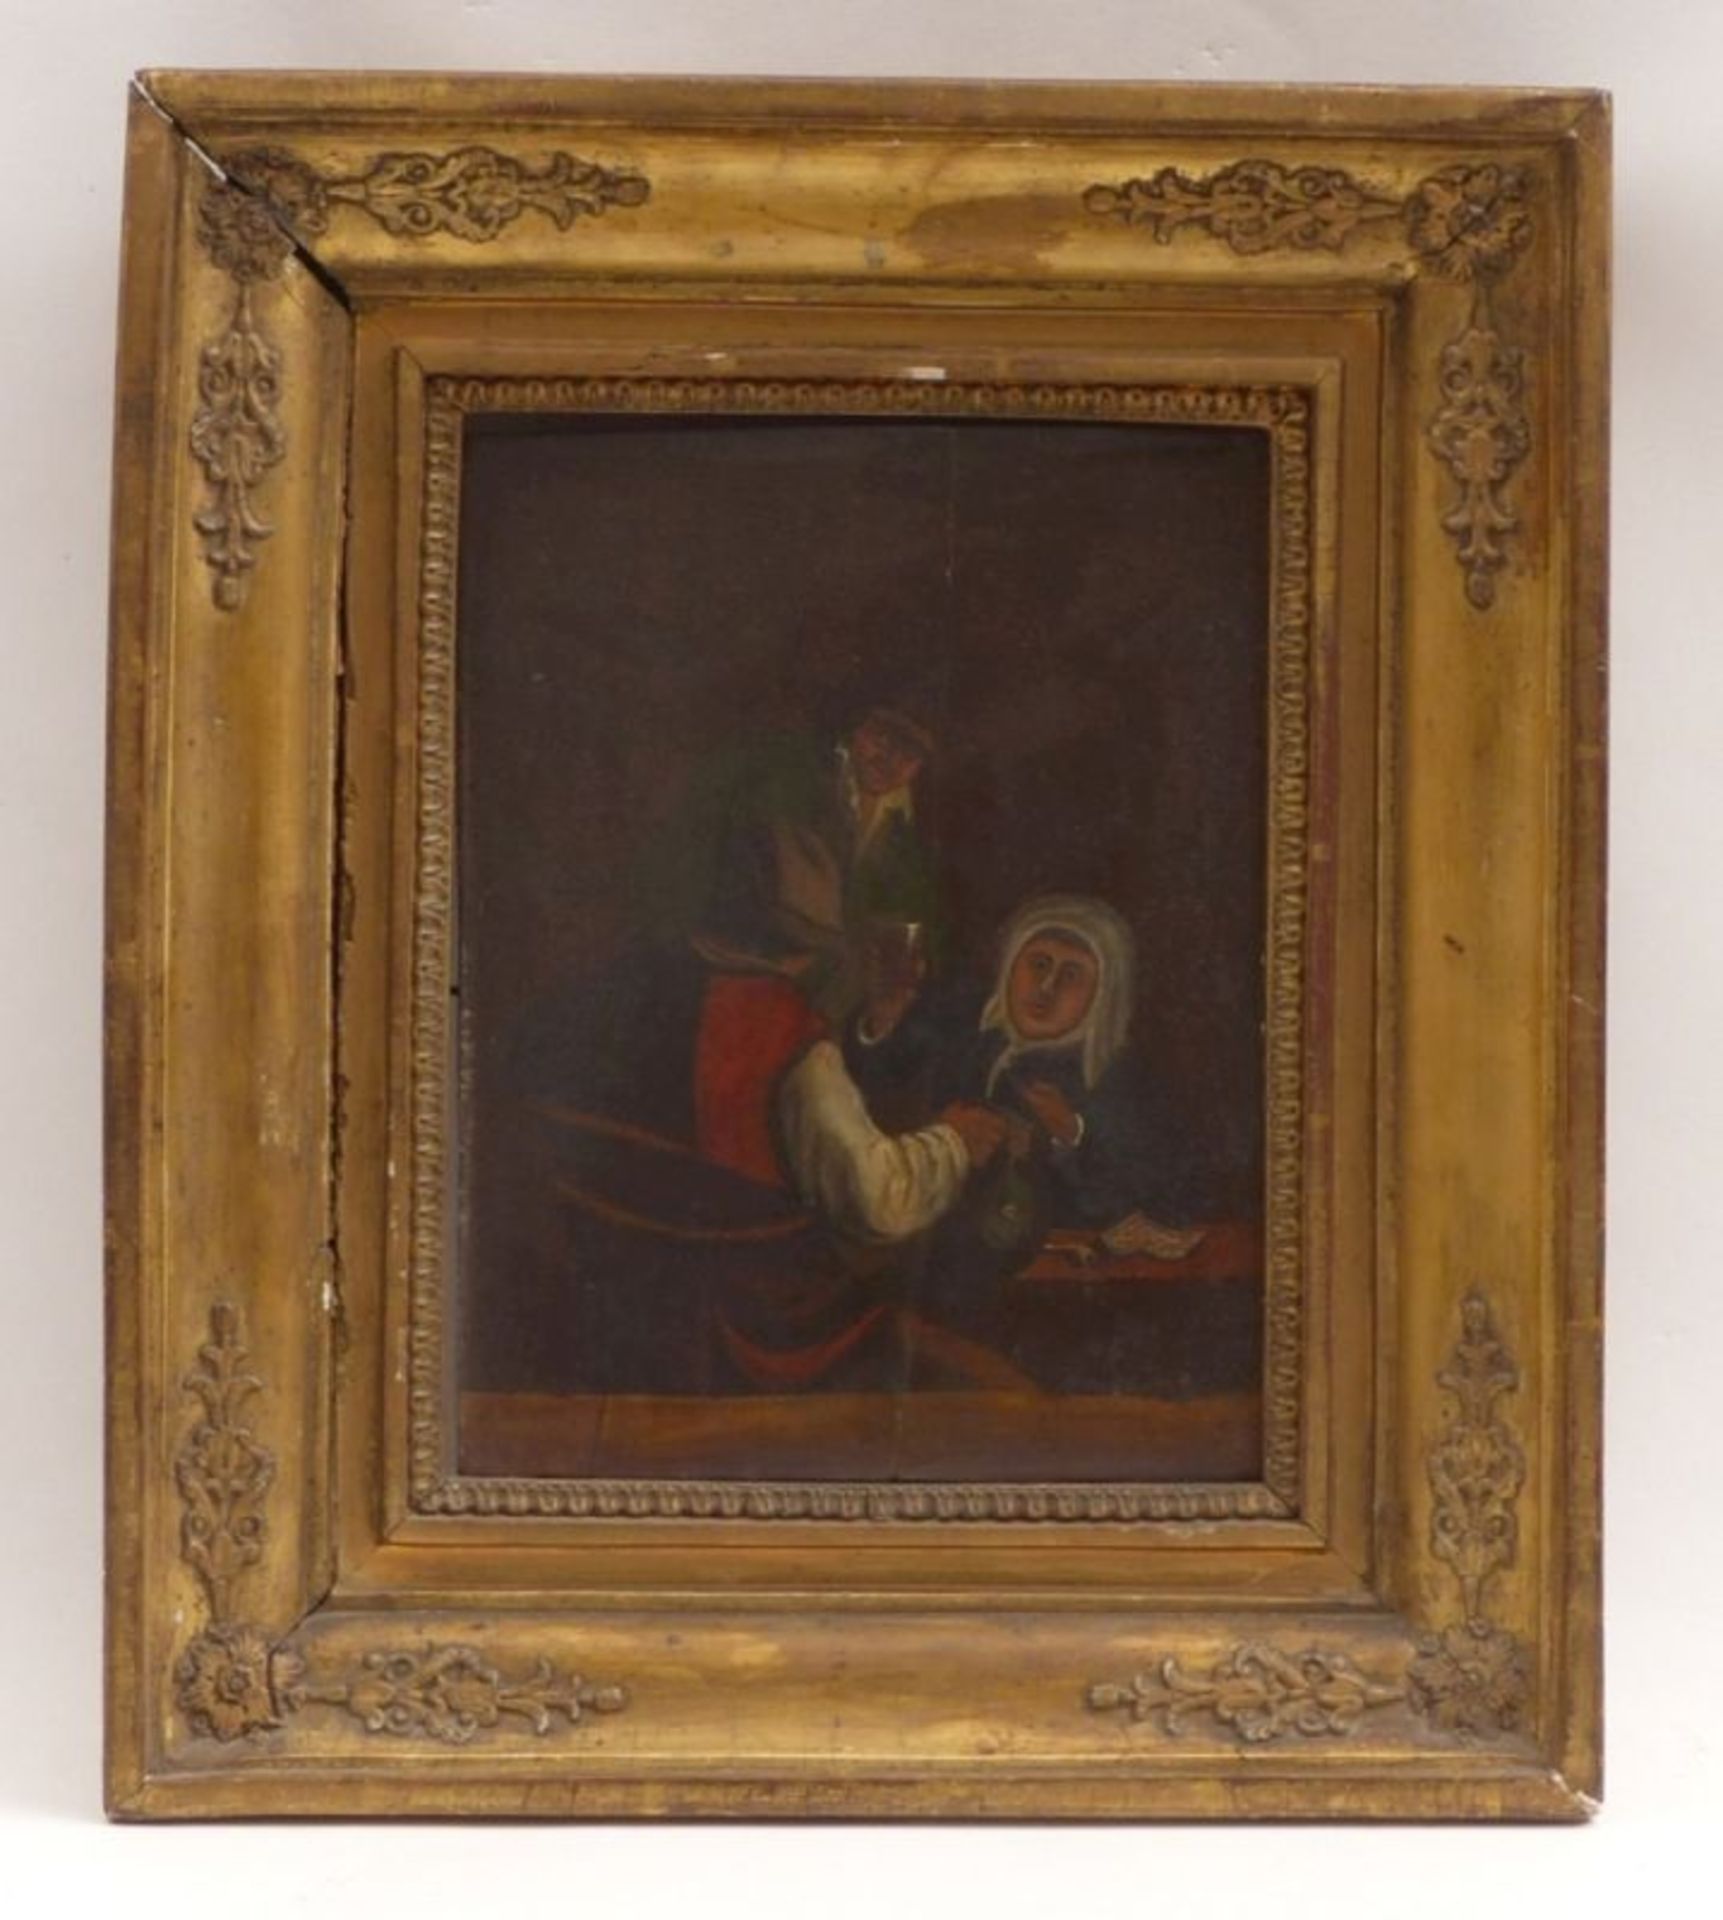 Unbekannter Maler des fr. 18. JahrhundertsDrei Zecher am WirtshaustischUm 1700. Öl/Holz. 25 x 20,3 - Bild 2 aus 4